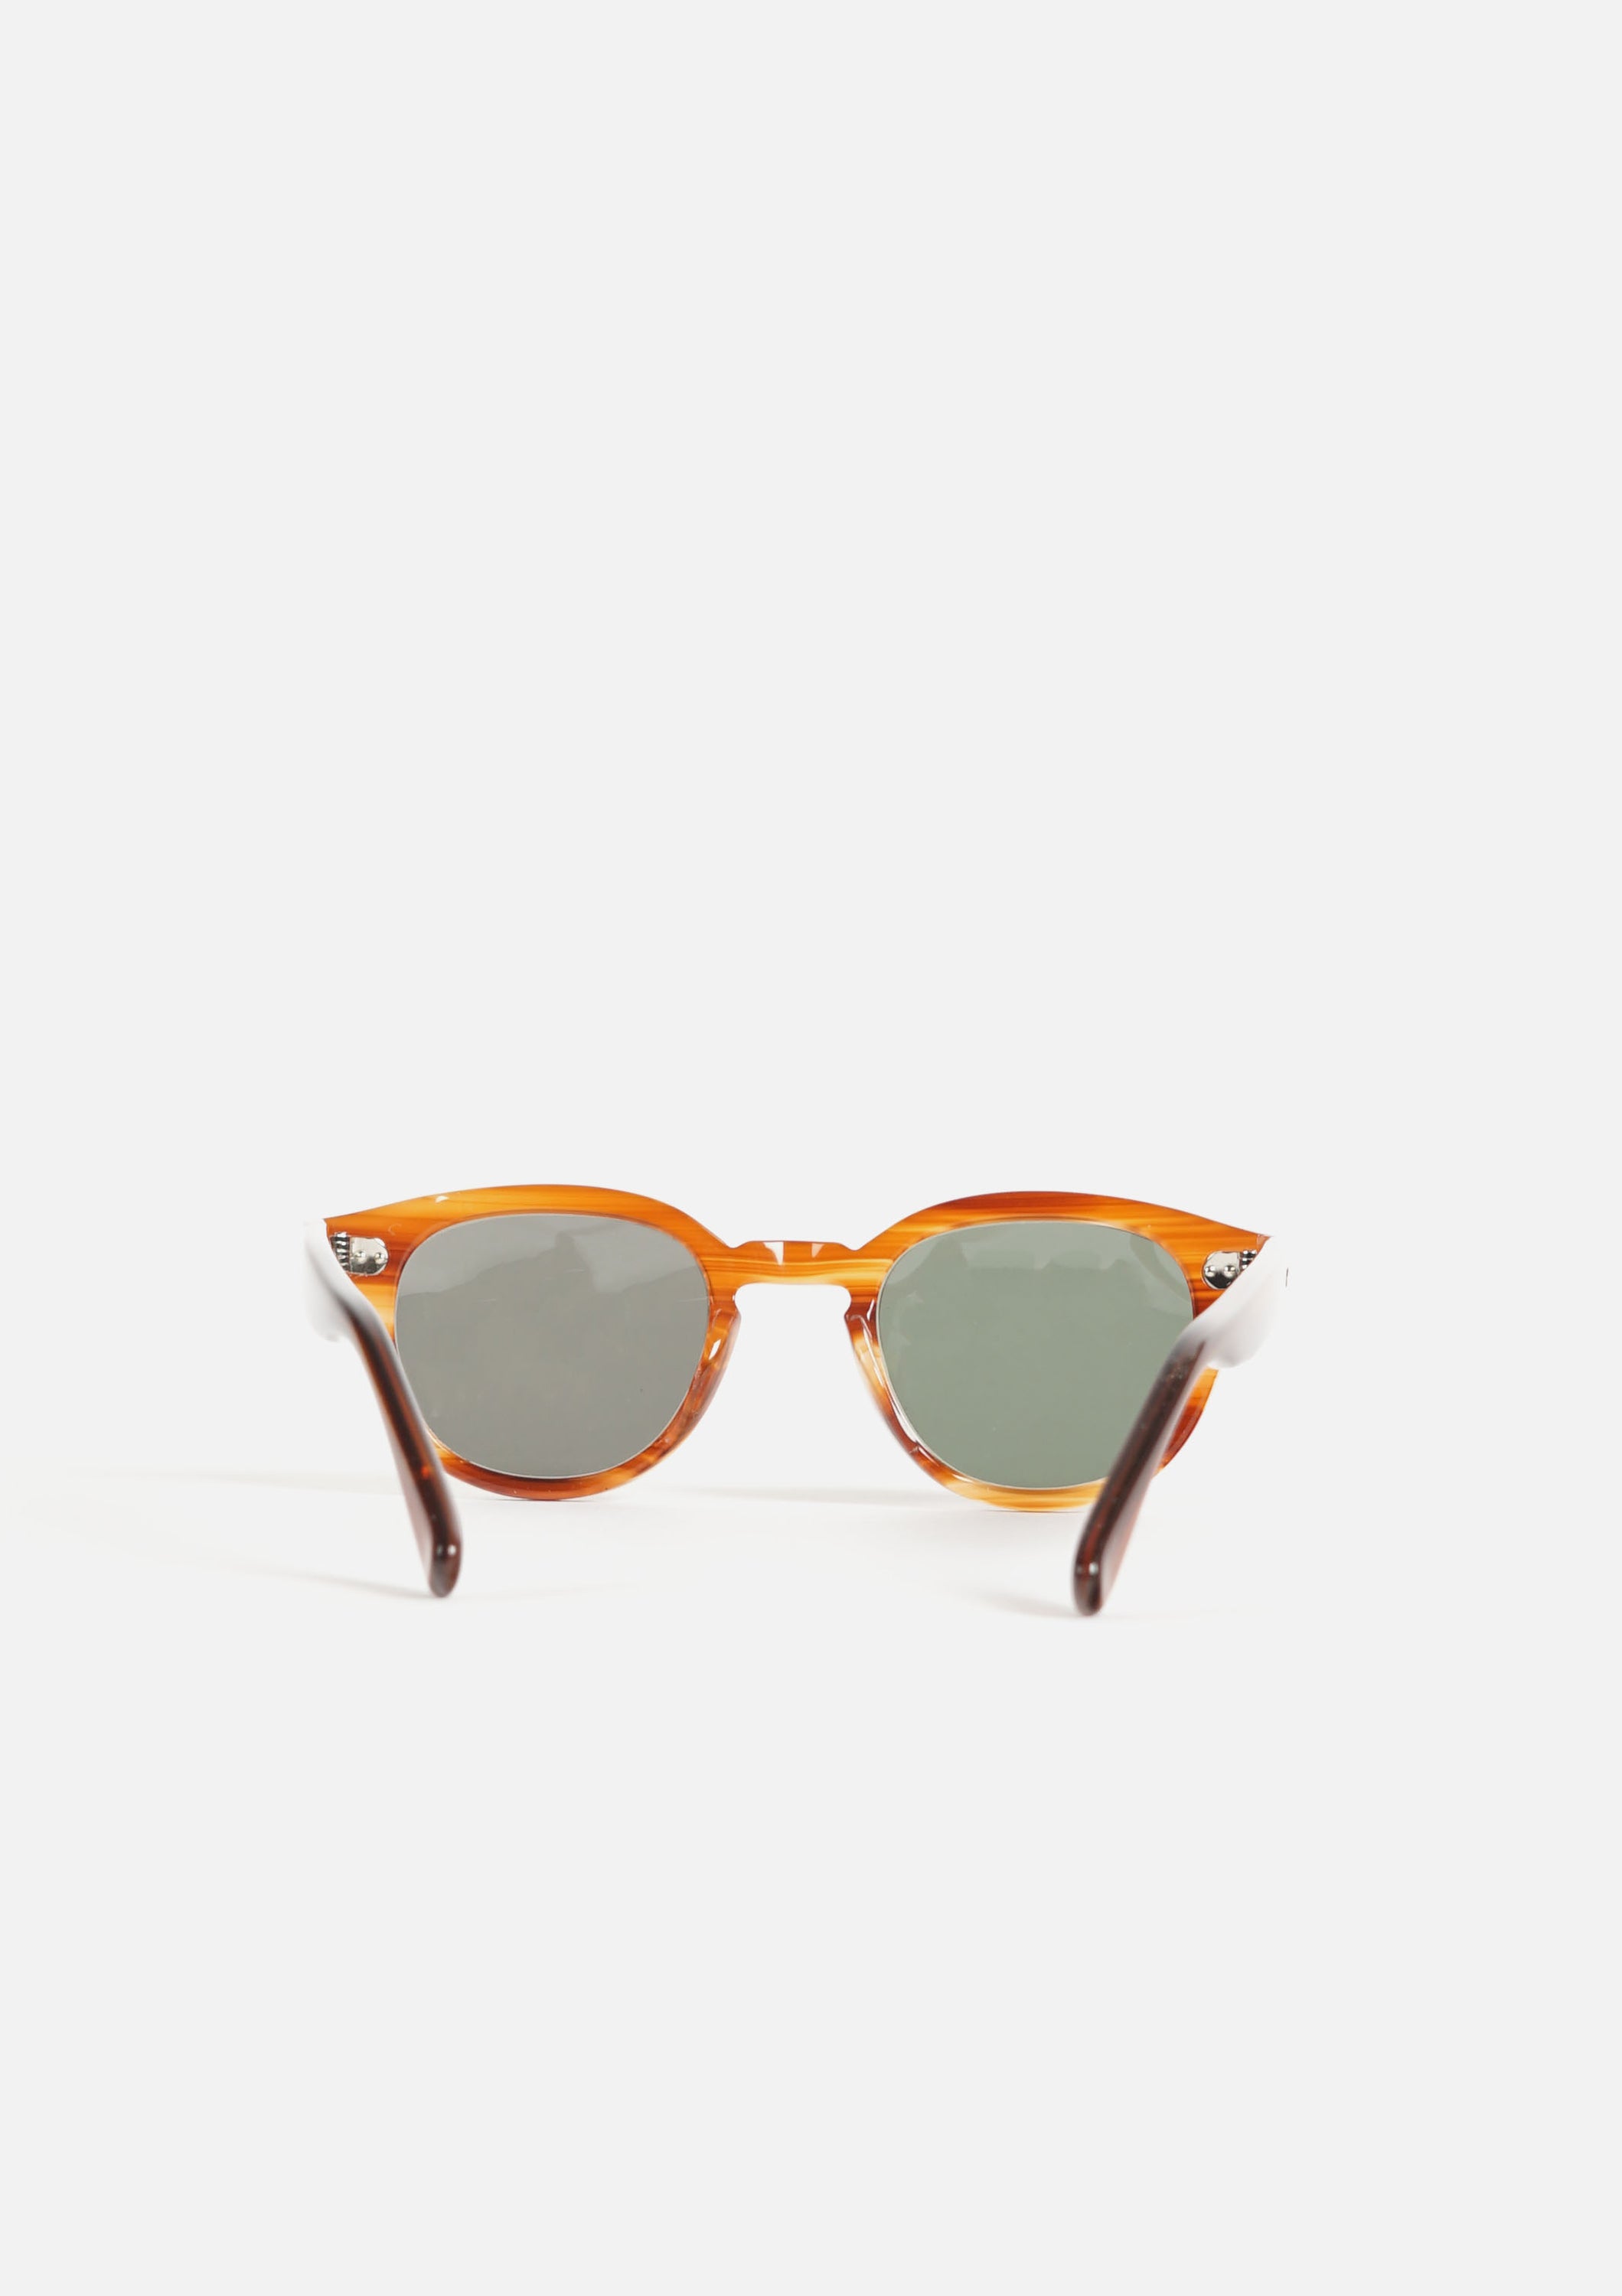 MODEL 511 Sunglasses Light Brown Tortoise